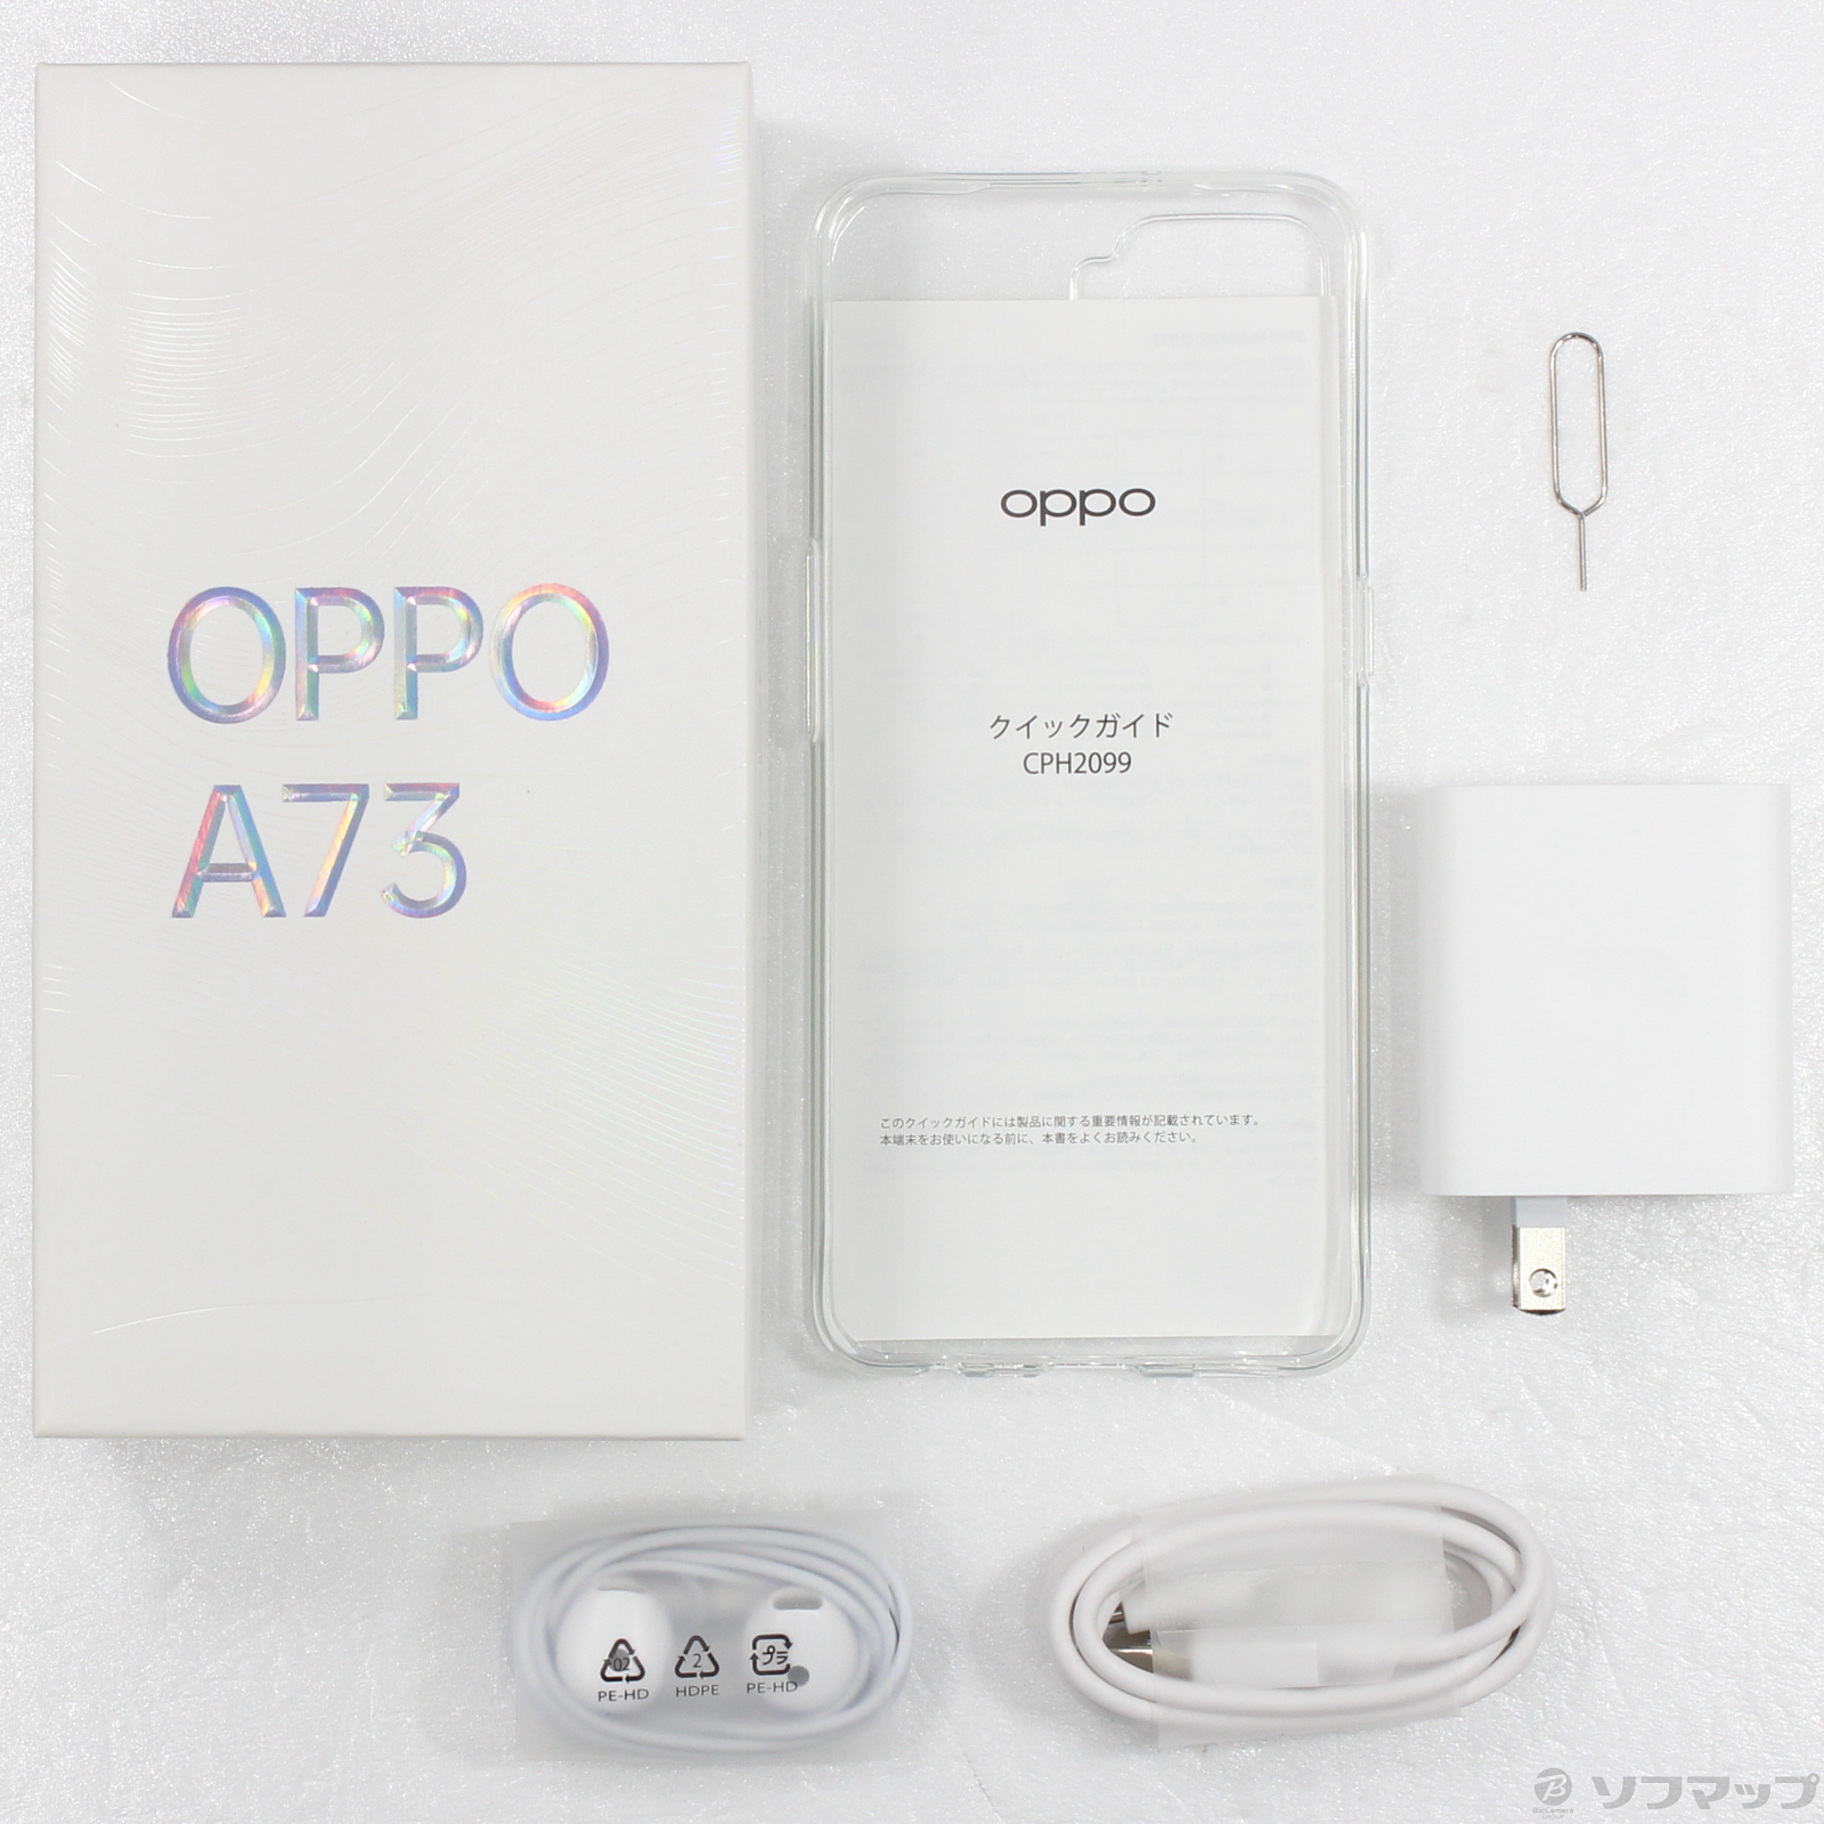 中古】OPPO A73 64GB ネービーブルー CPH2099BL SIMフリー